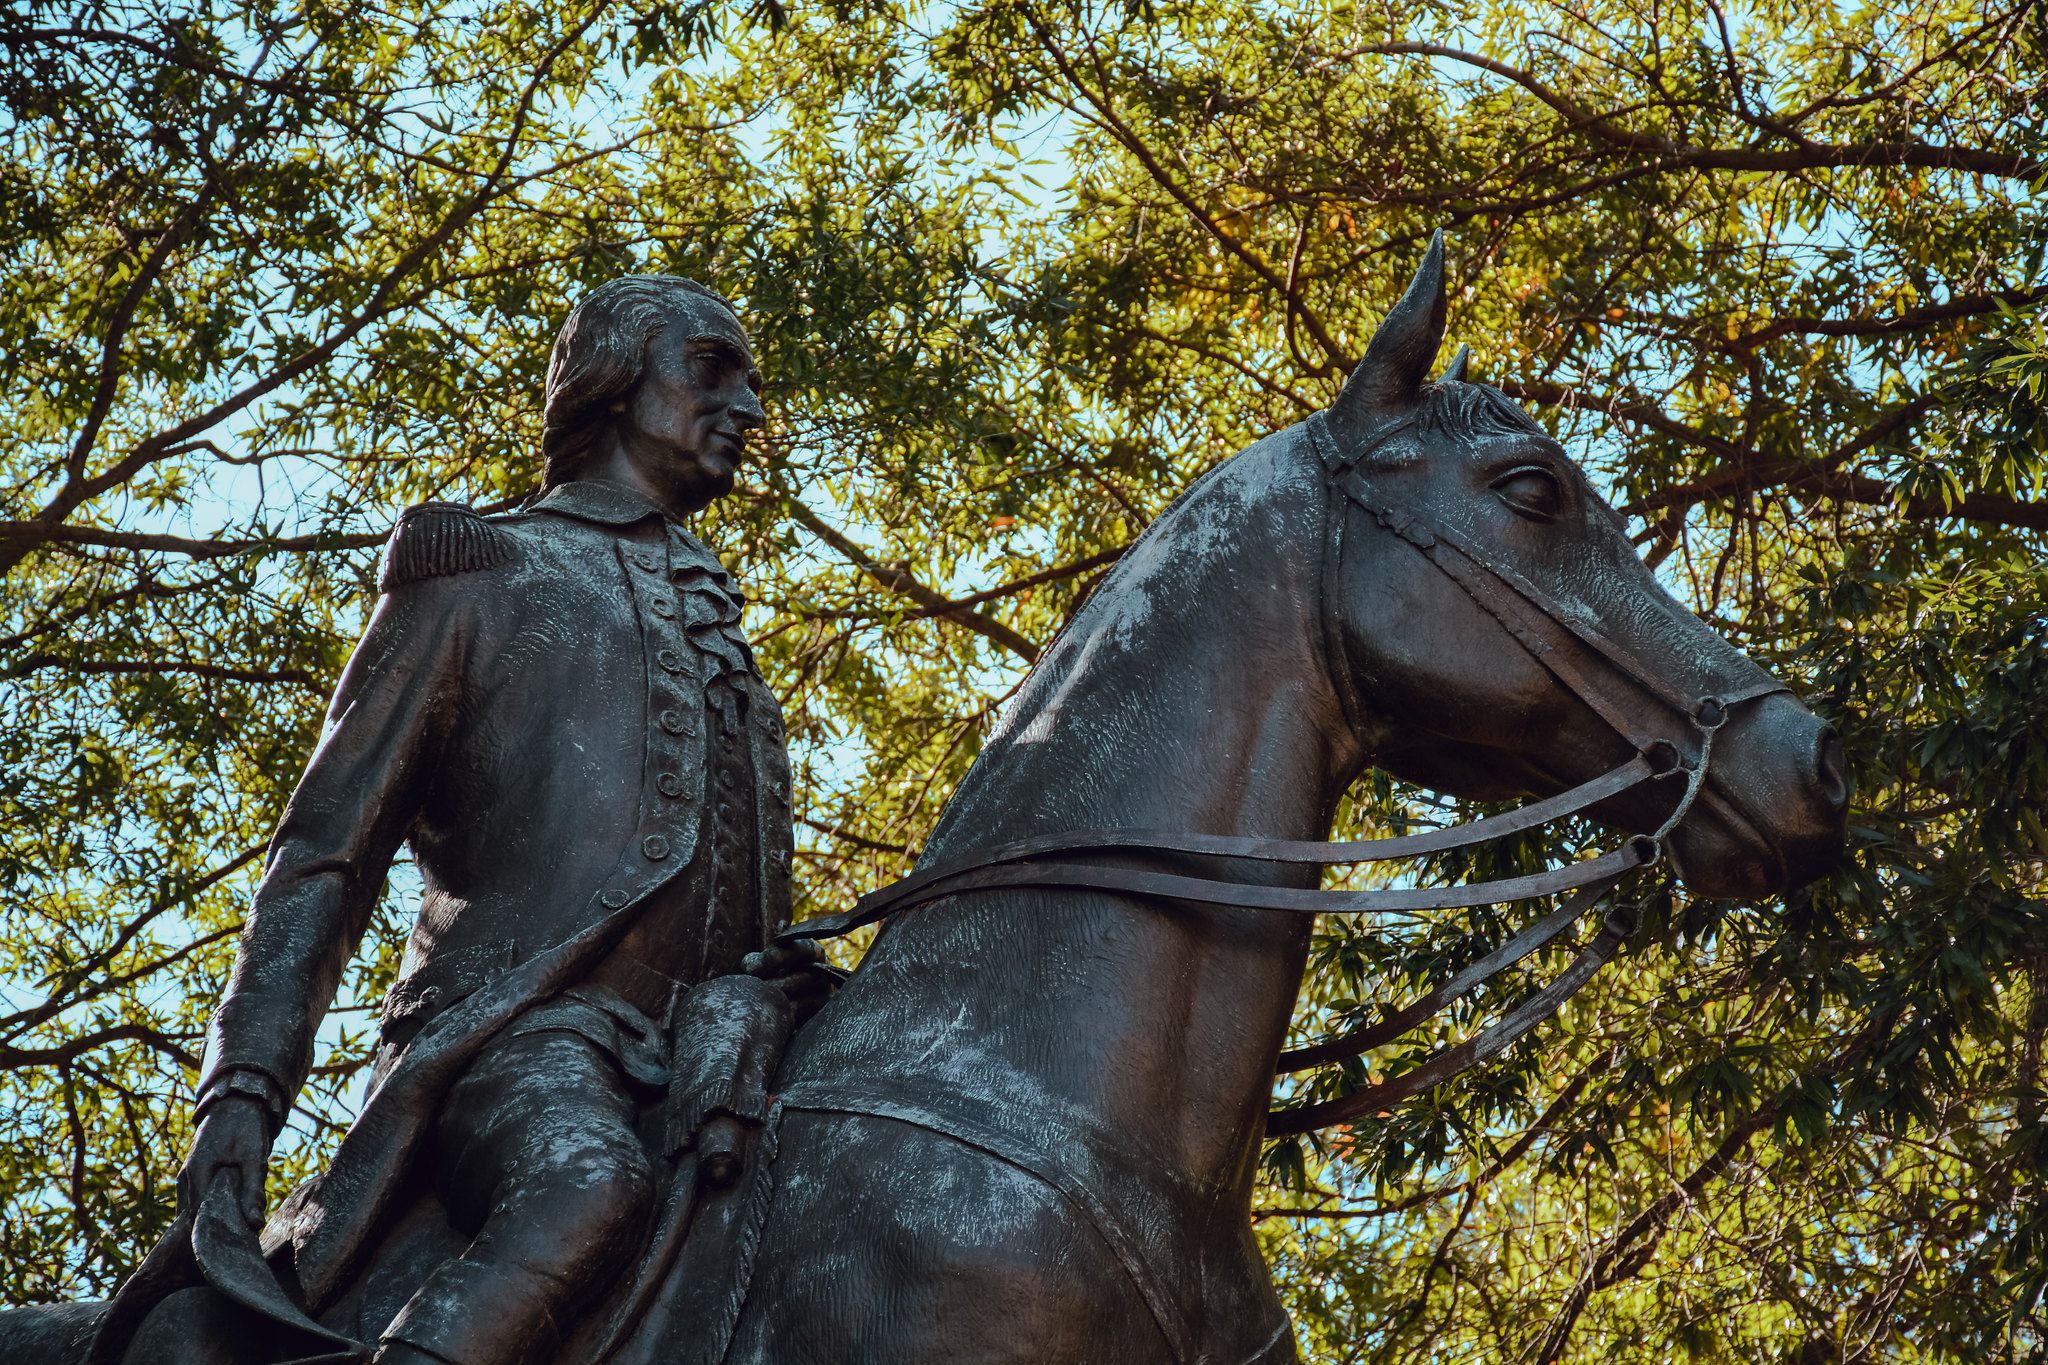 El 4 de julio norteamericano: el héroe andaluz que fue clave en la independencia  de Estados Unidos. Bernardo de Gálvez, en un monumento ecuestre en Washington.